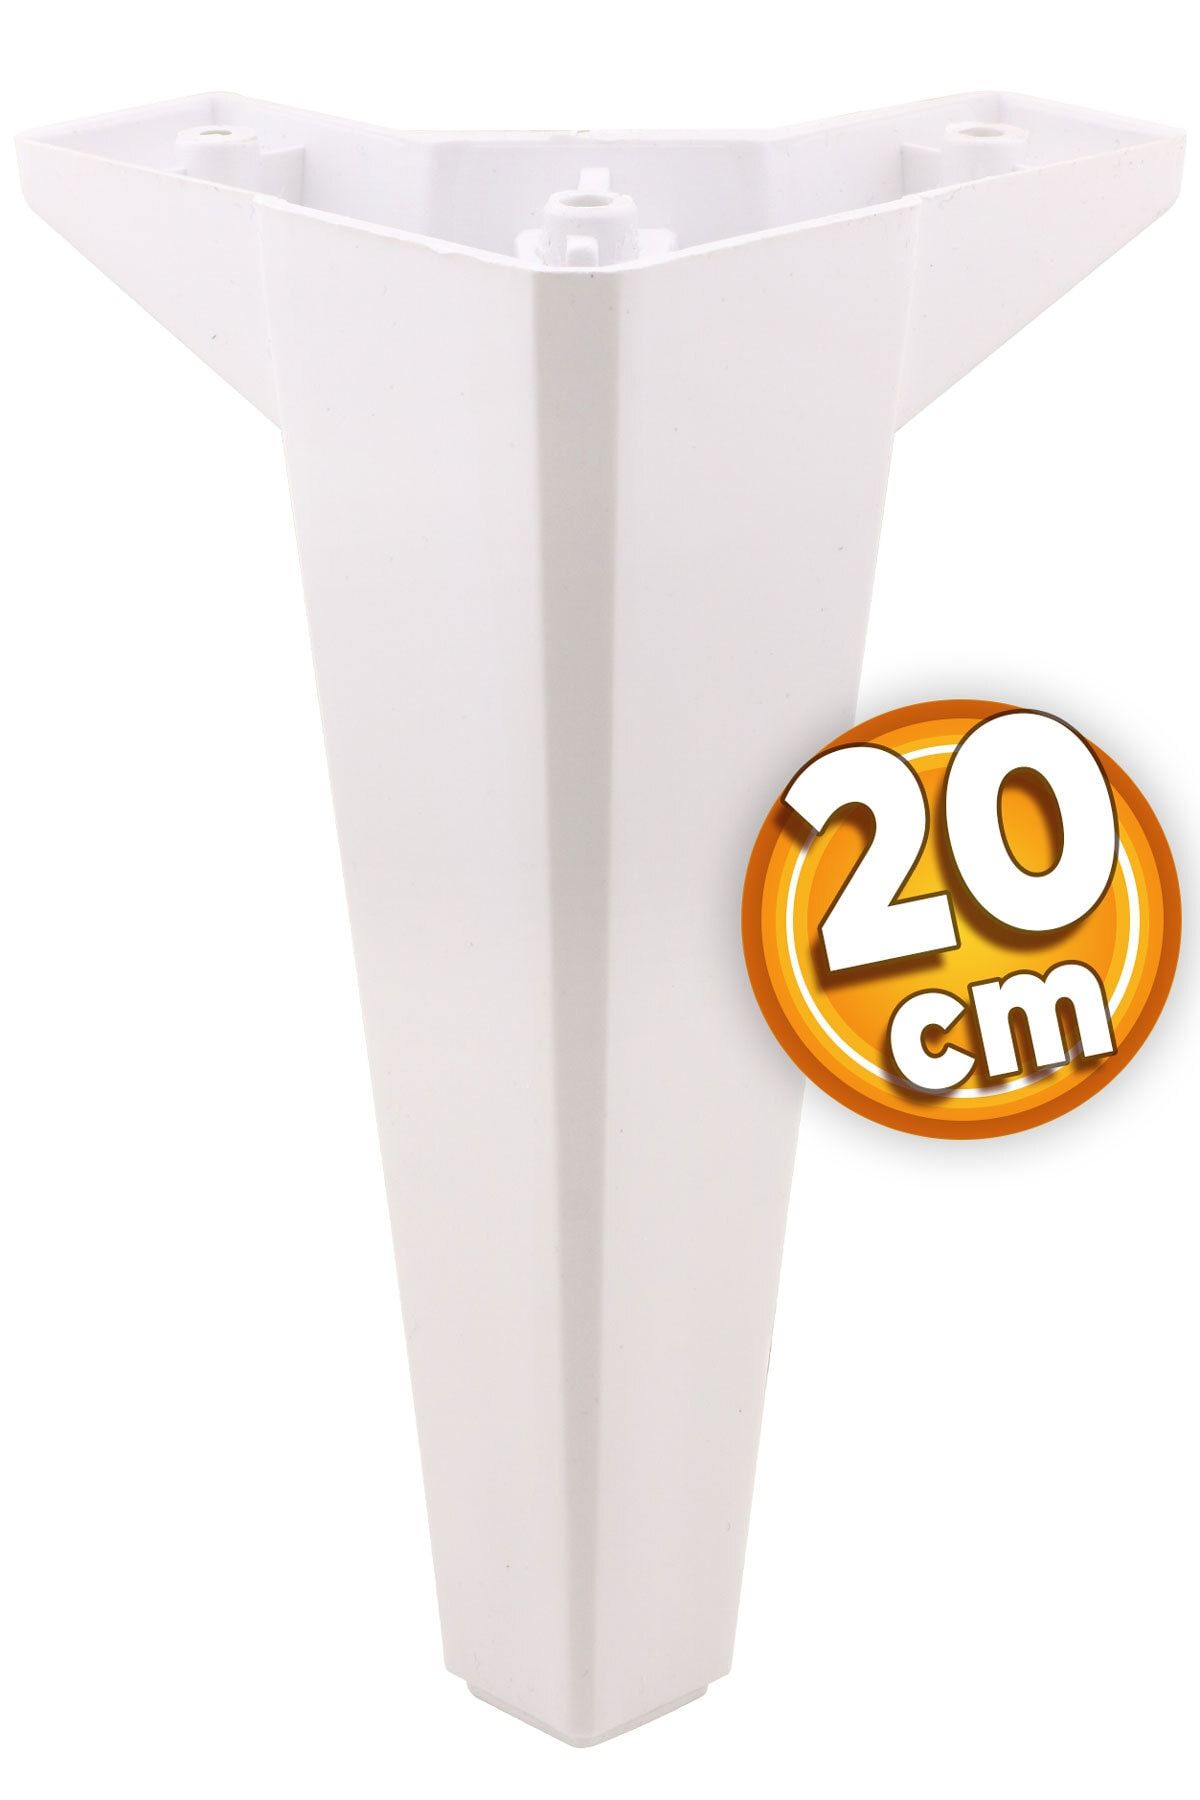 Badem10 Sedir Lüks Mobilya Kanepe Sehpa Tv Ünitesi Koltuk Ayağı 20 Cm Beyaz Baza Ayakları